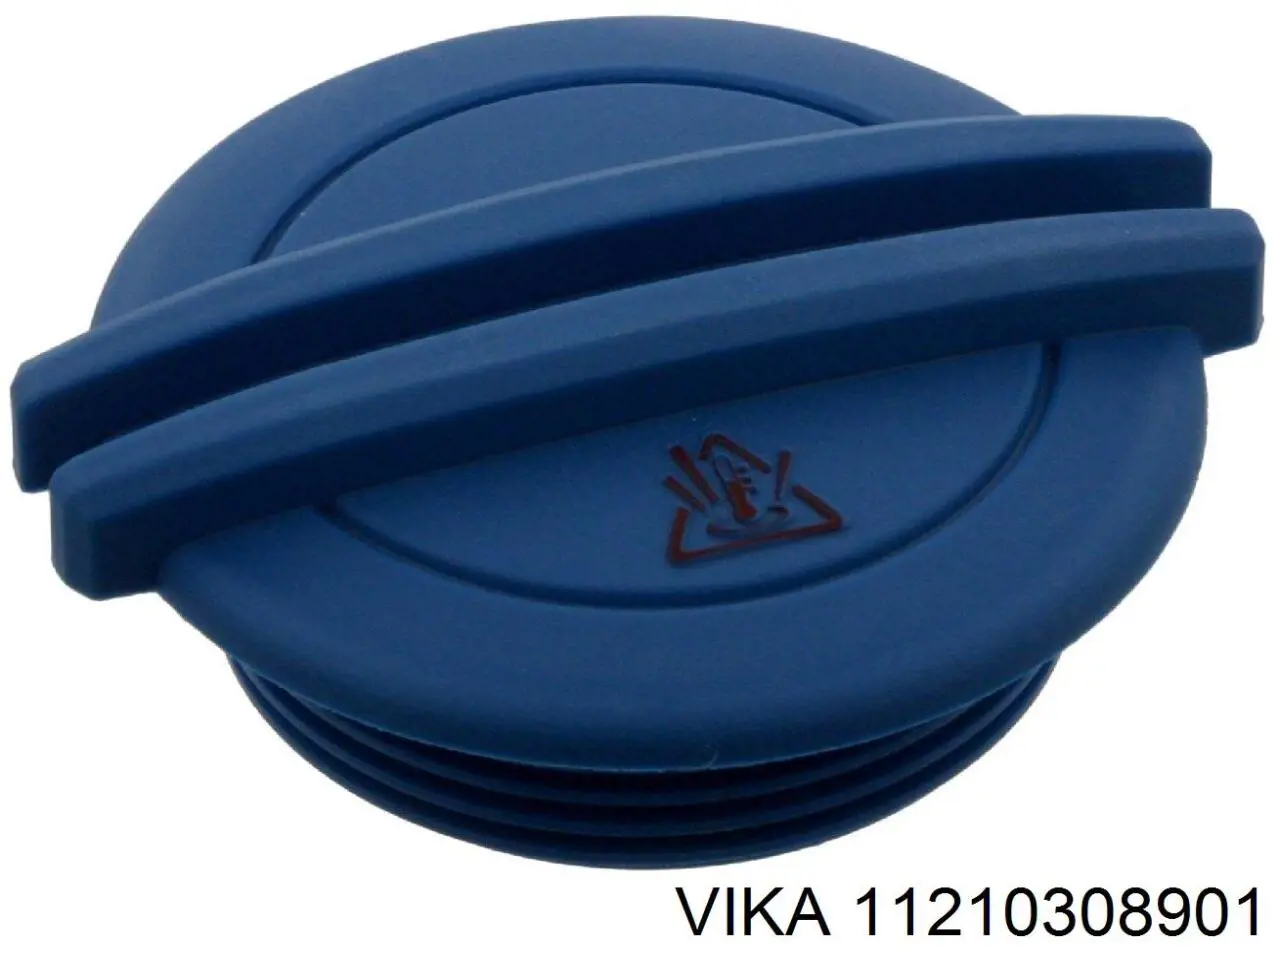 11210308901 Vika tampa (tampão do tanque de expansão)